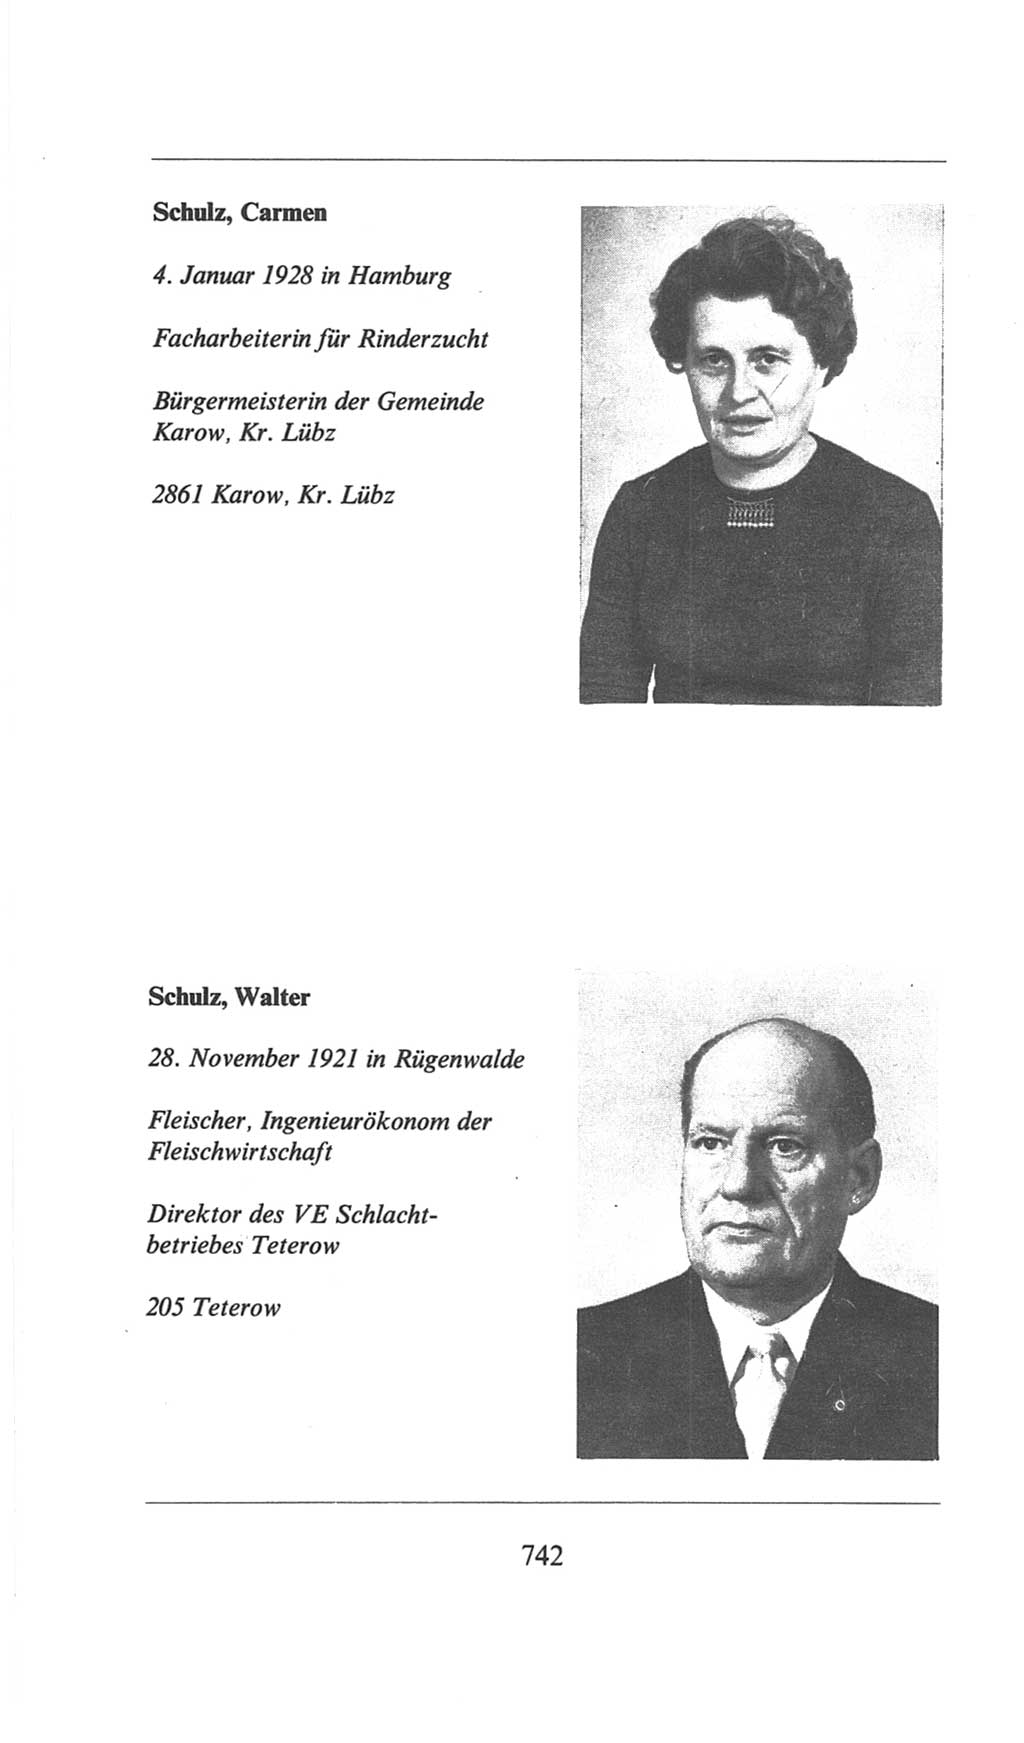 Volkskammer (VK) der Deutschen Demokratischen Republik (DDR), 6. Wahlperiode 1971-1976, Seite 742 (VK. DDR 6. WP. 1971-1976, S. 742)